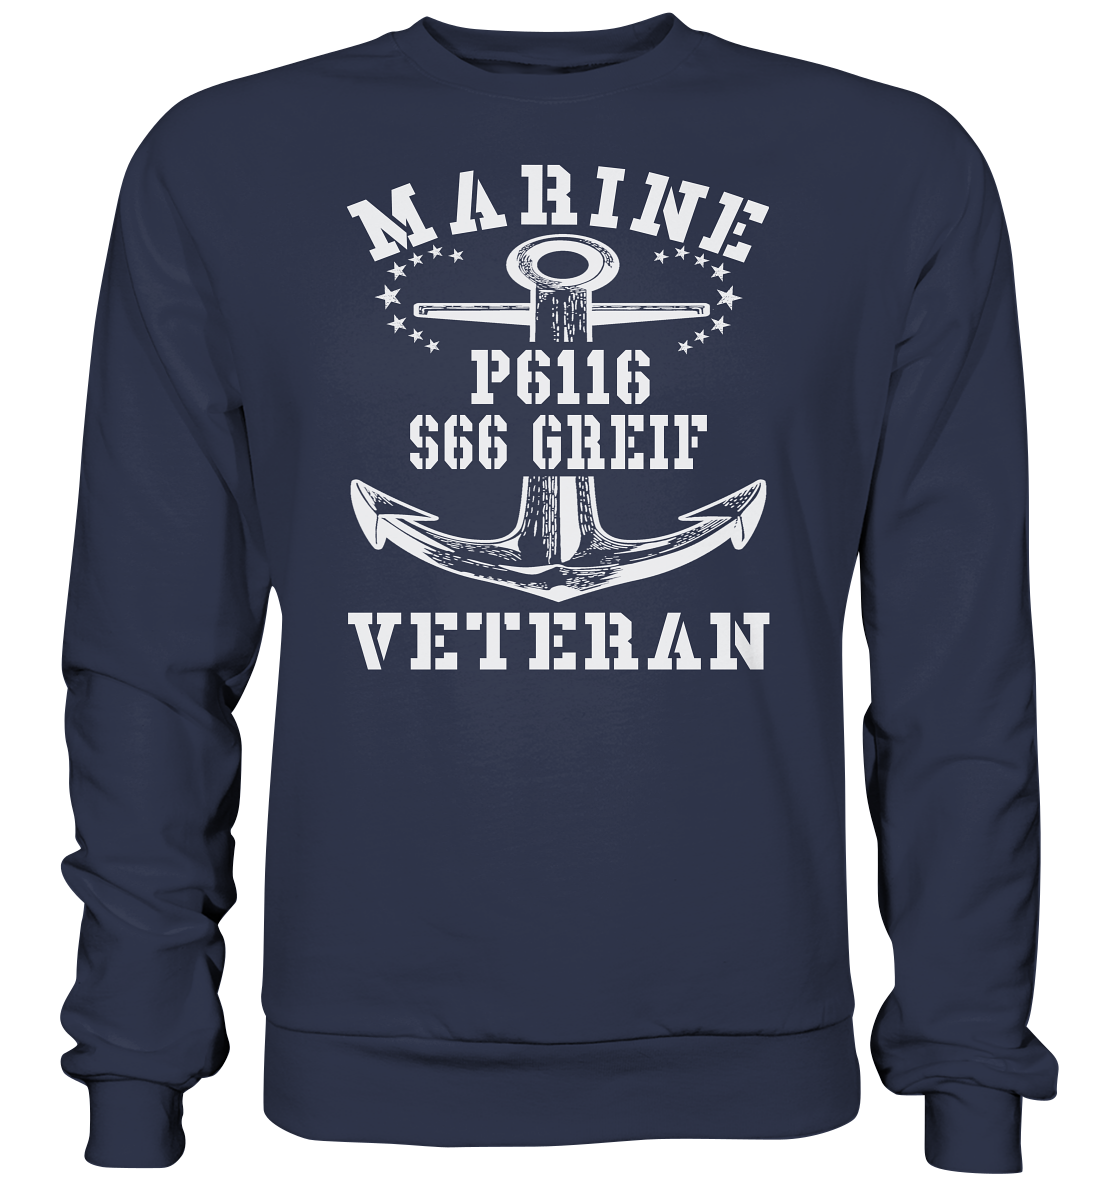 FK-Schnellboot P6116 GREIF Marine Veteran - Premium Sweatshirt